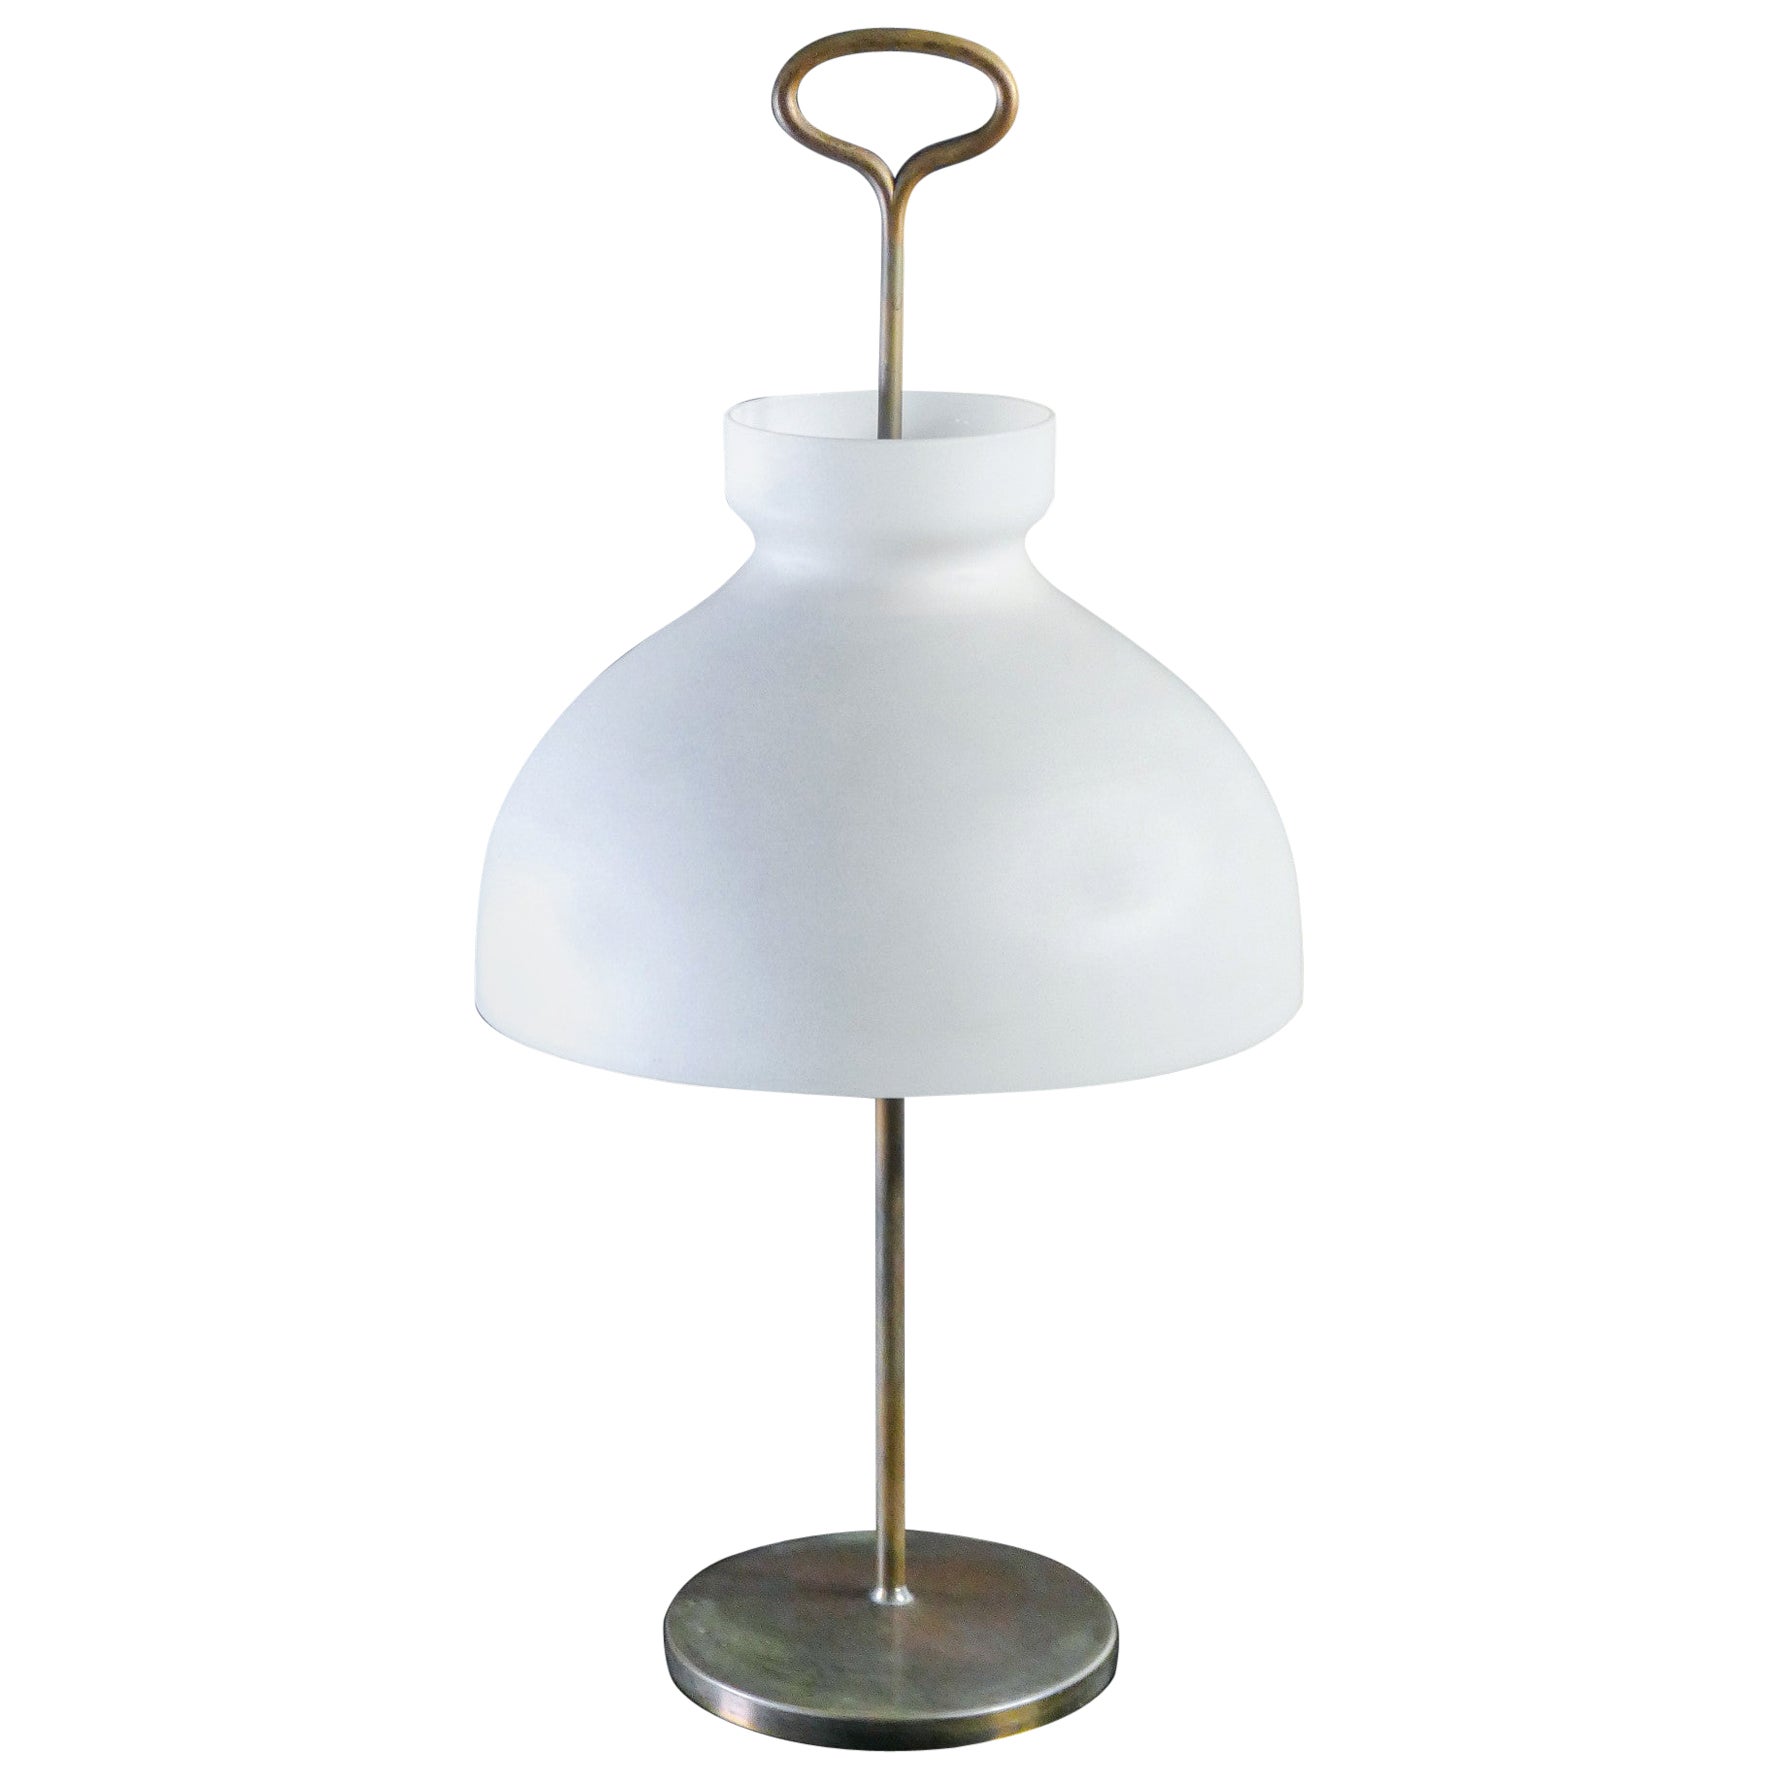 Arenzano LTA3 Table Lamp, Design Ignazio GARDELLA for AZUCENA, Italy, 1956